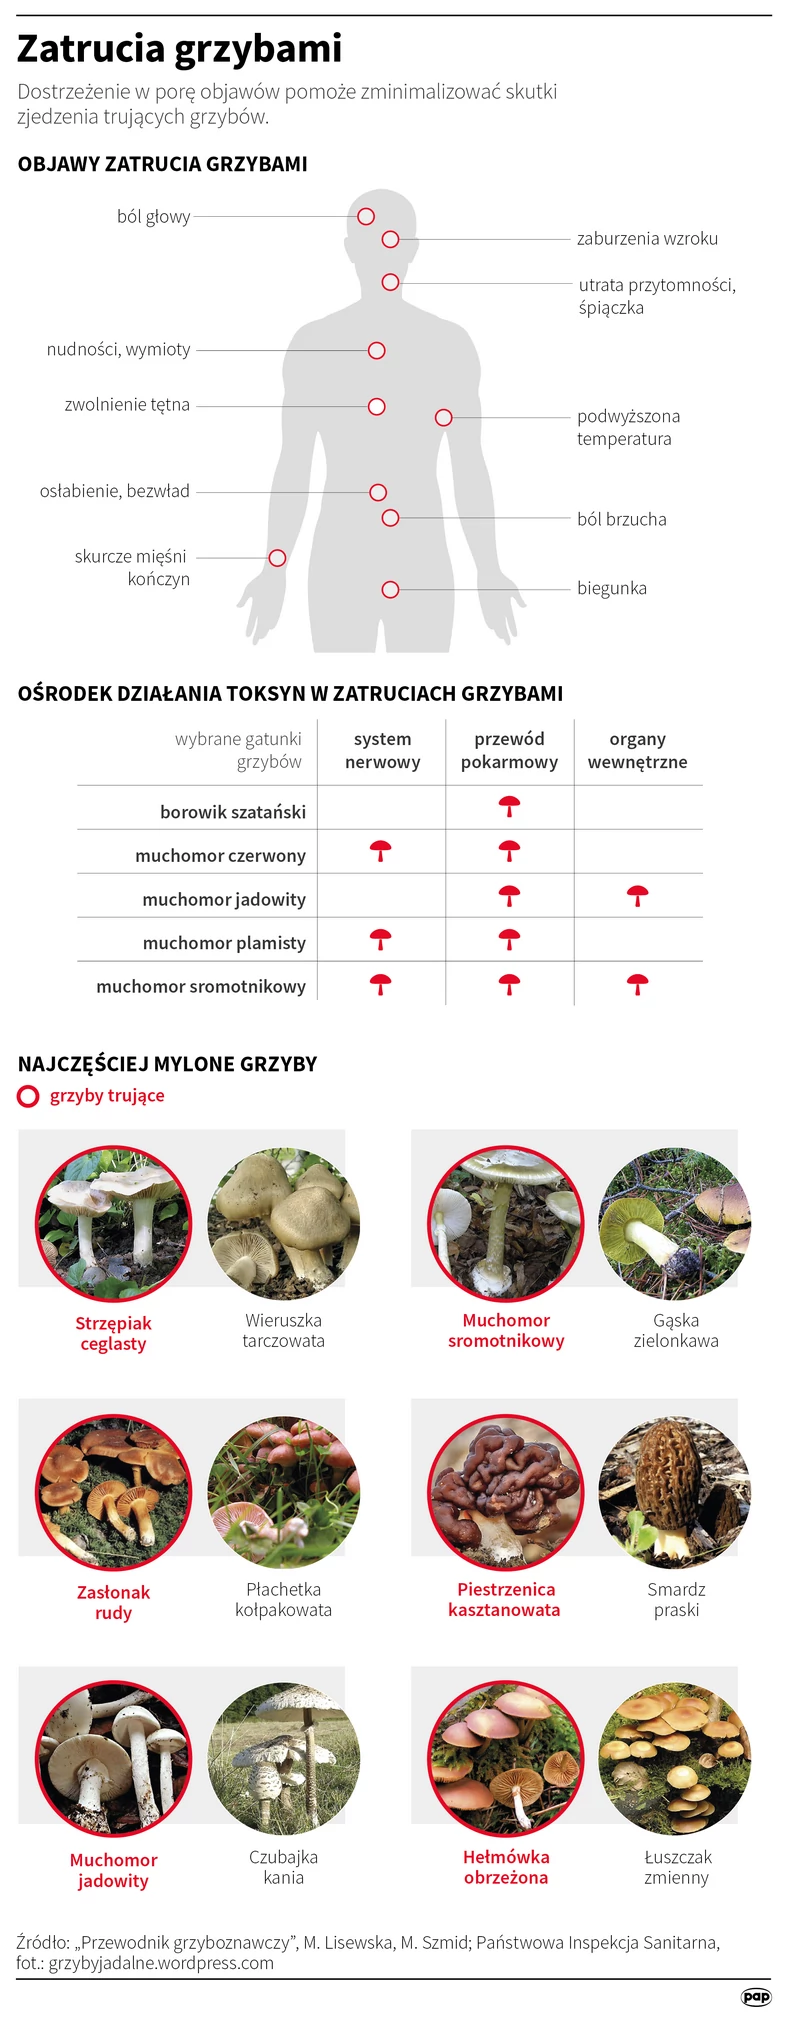 Zatrucia grzybami - infografika